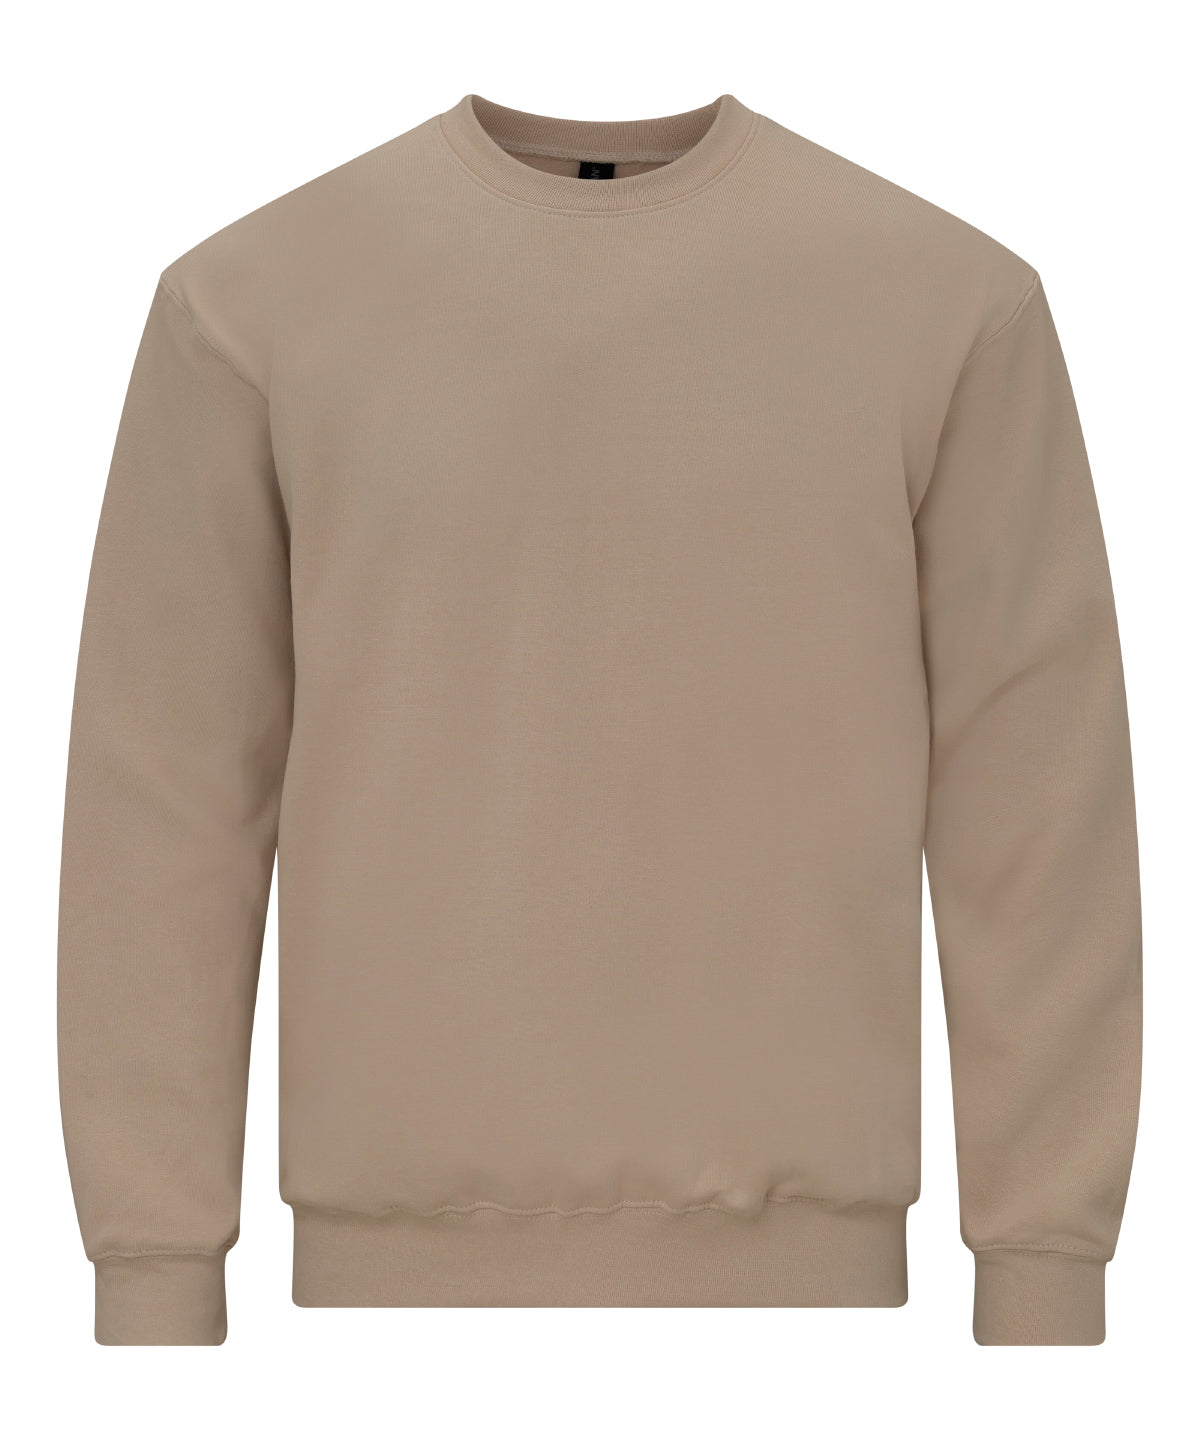 Personalised Sweatshirts - Dark Grey Gildan Softstyle™ midweight fleece adult crew neck